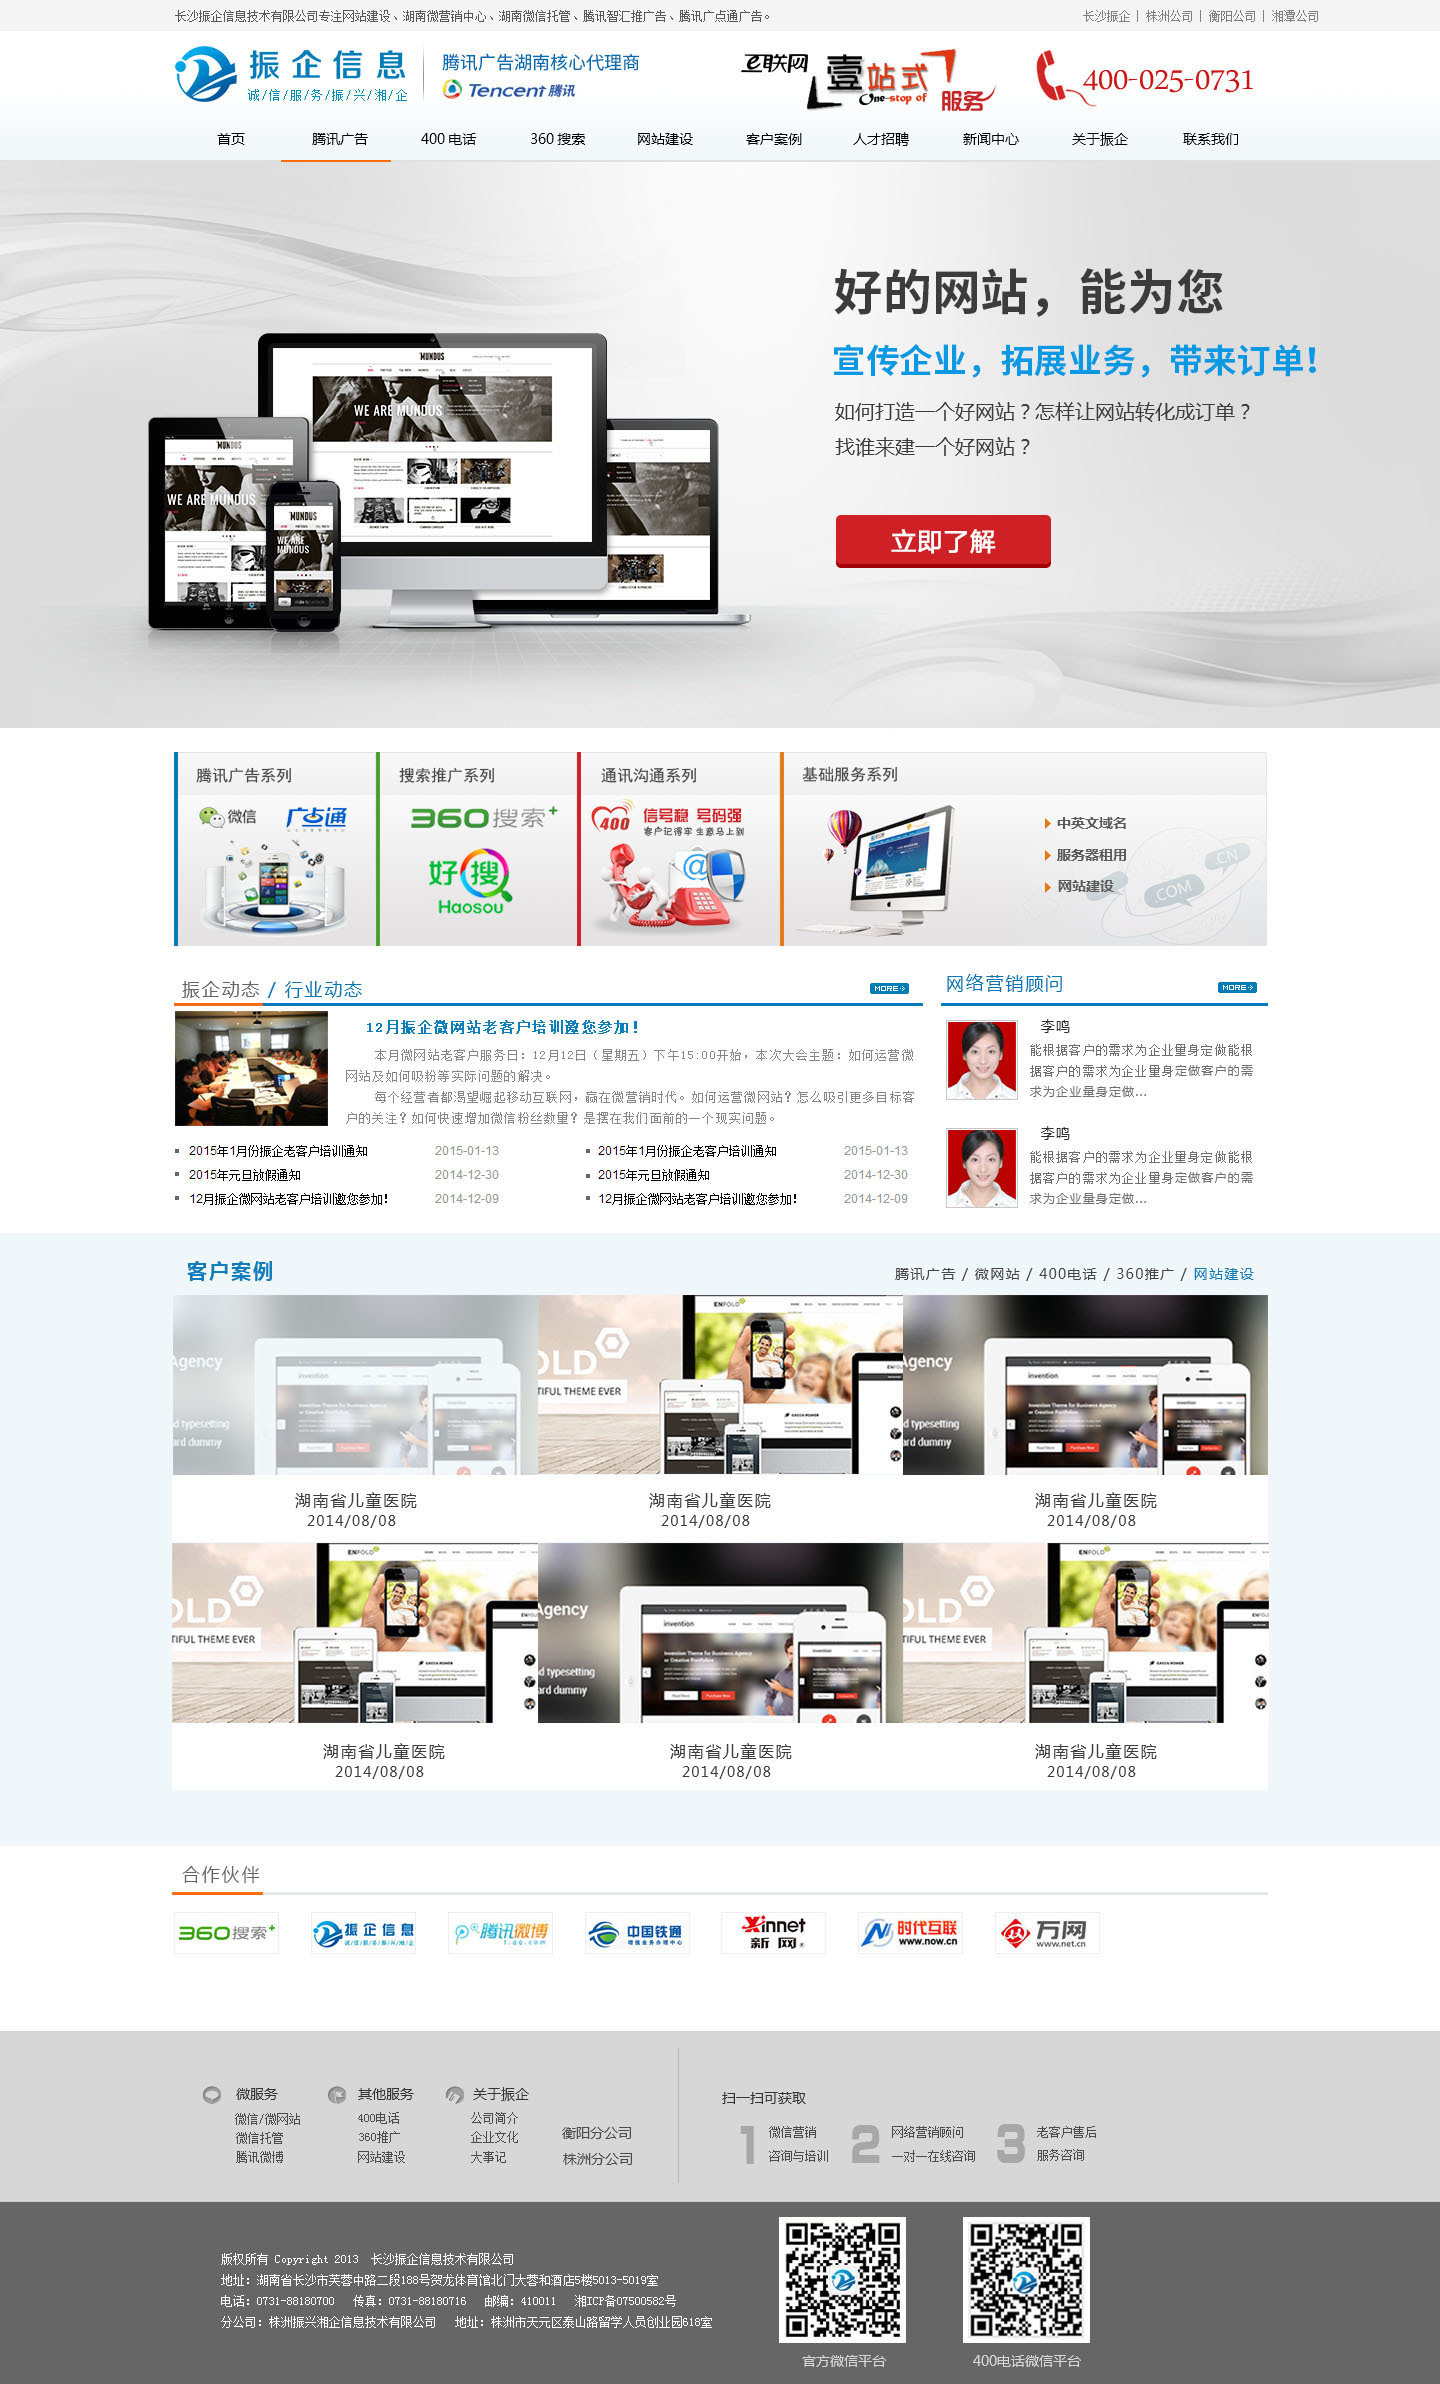 PC 中小型企业WEB设计